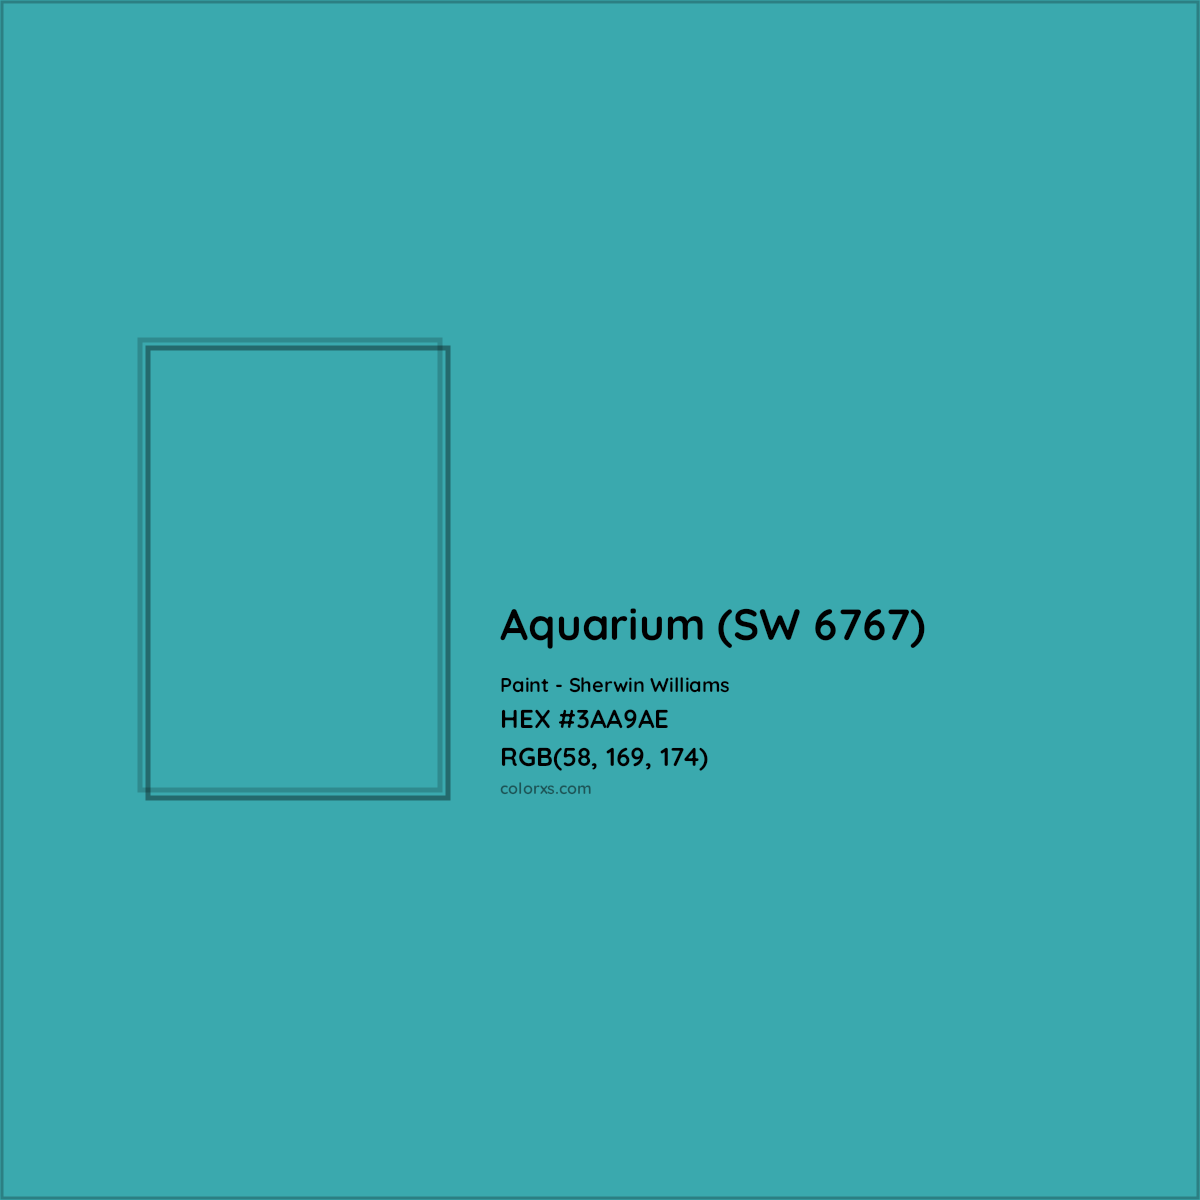 HEX #3AA9AE Aquarium (SW 6767) Paint Sherwin Williams - Color Code